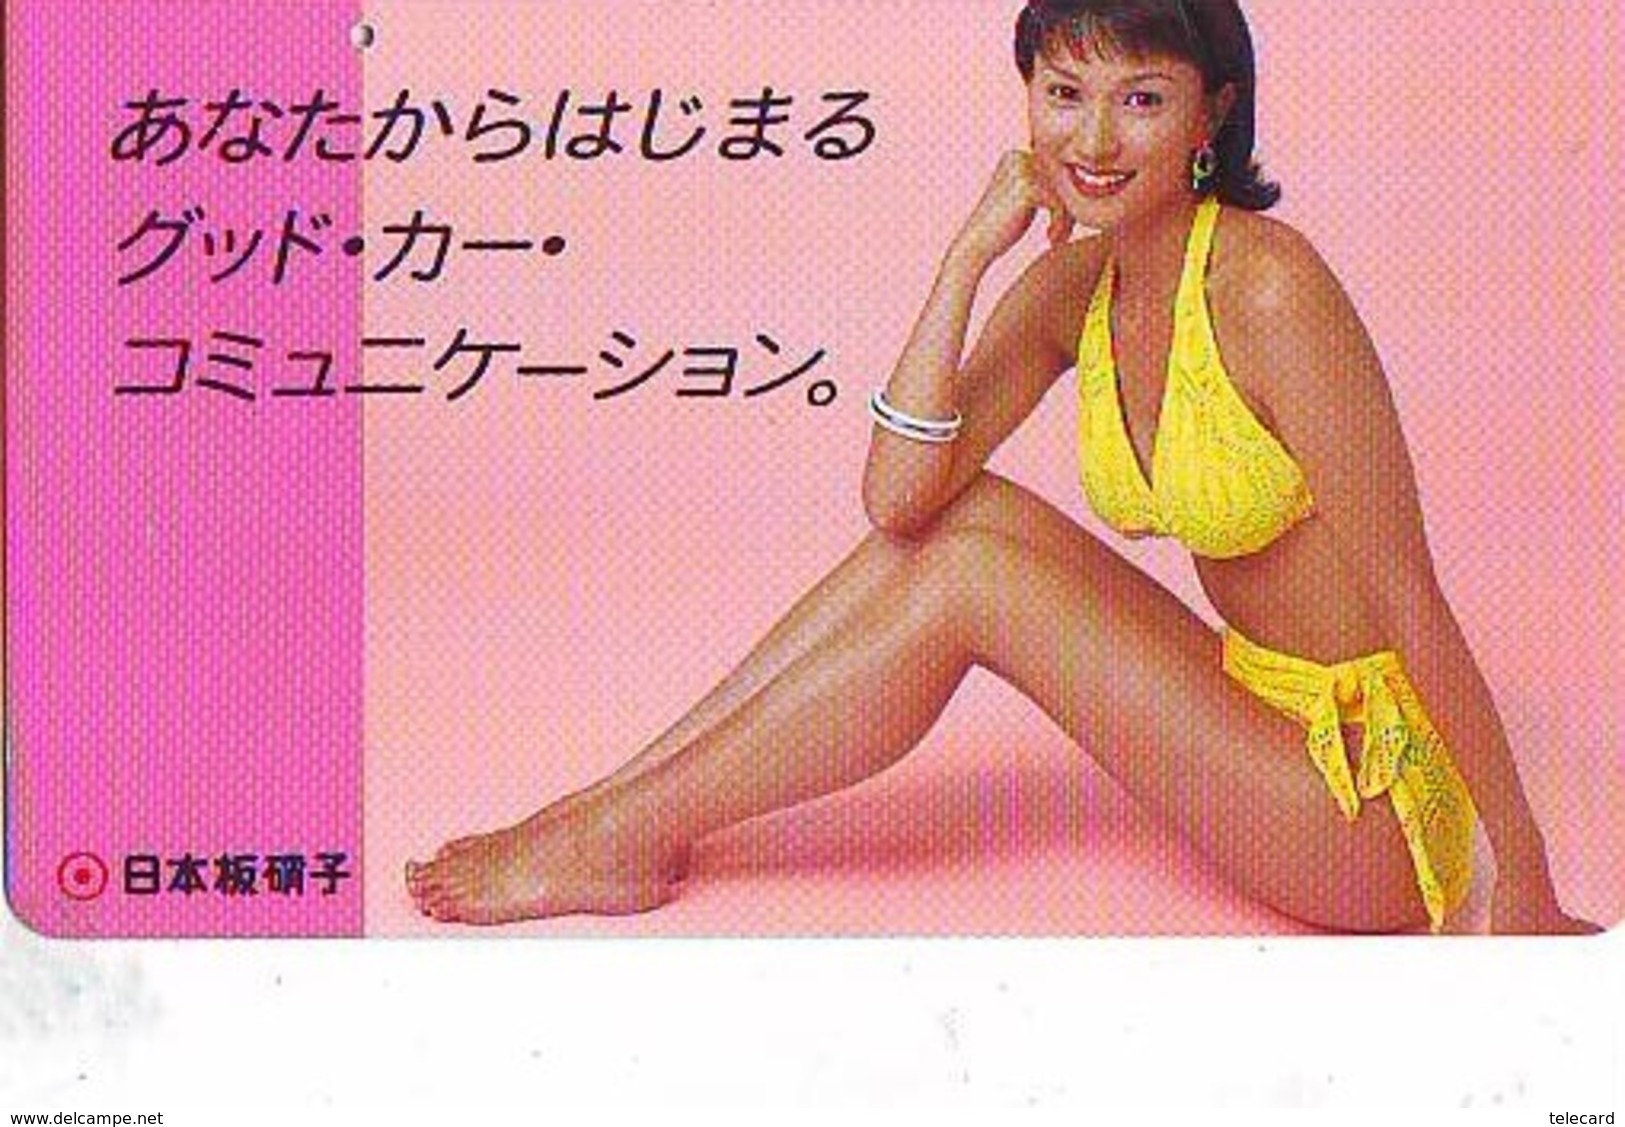 Télécarte Japon * EROTIQUE (6603)    *  EROTIC PHONECARD JAPAN * TK * BATHCLOTHES * FEMME SEXY LADY LINGERIE - Mode